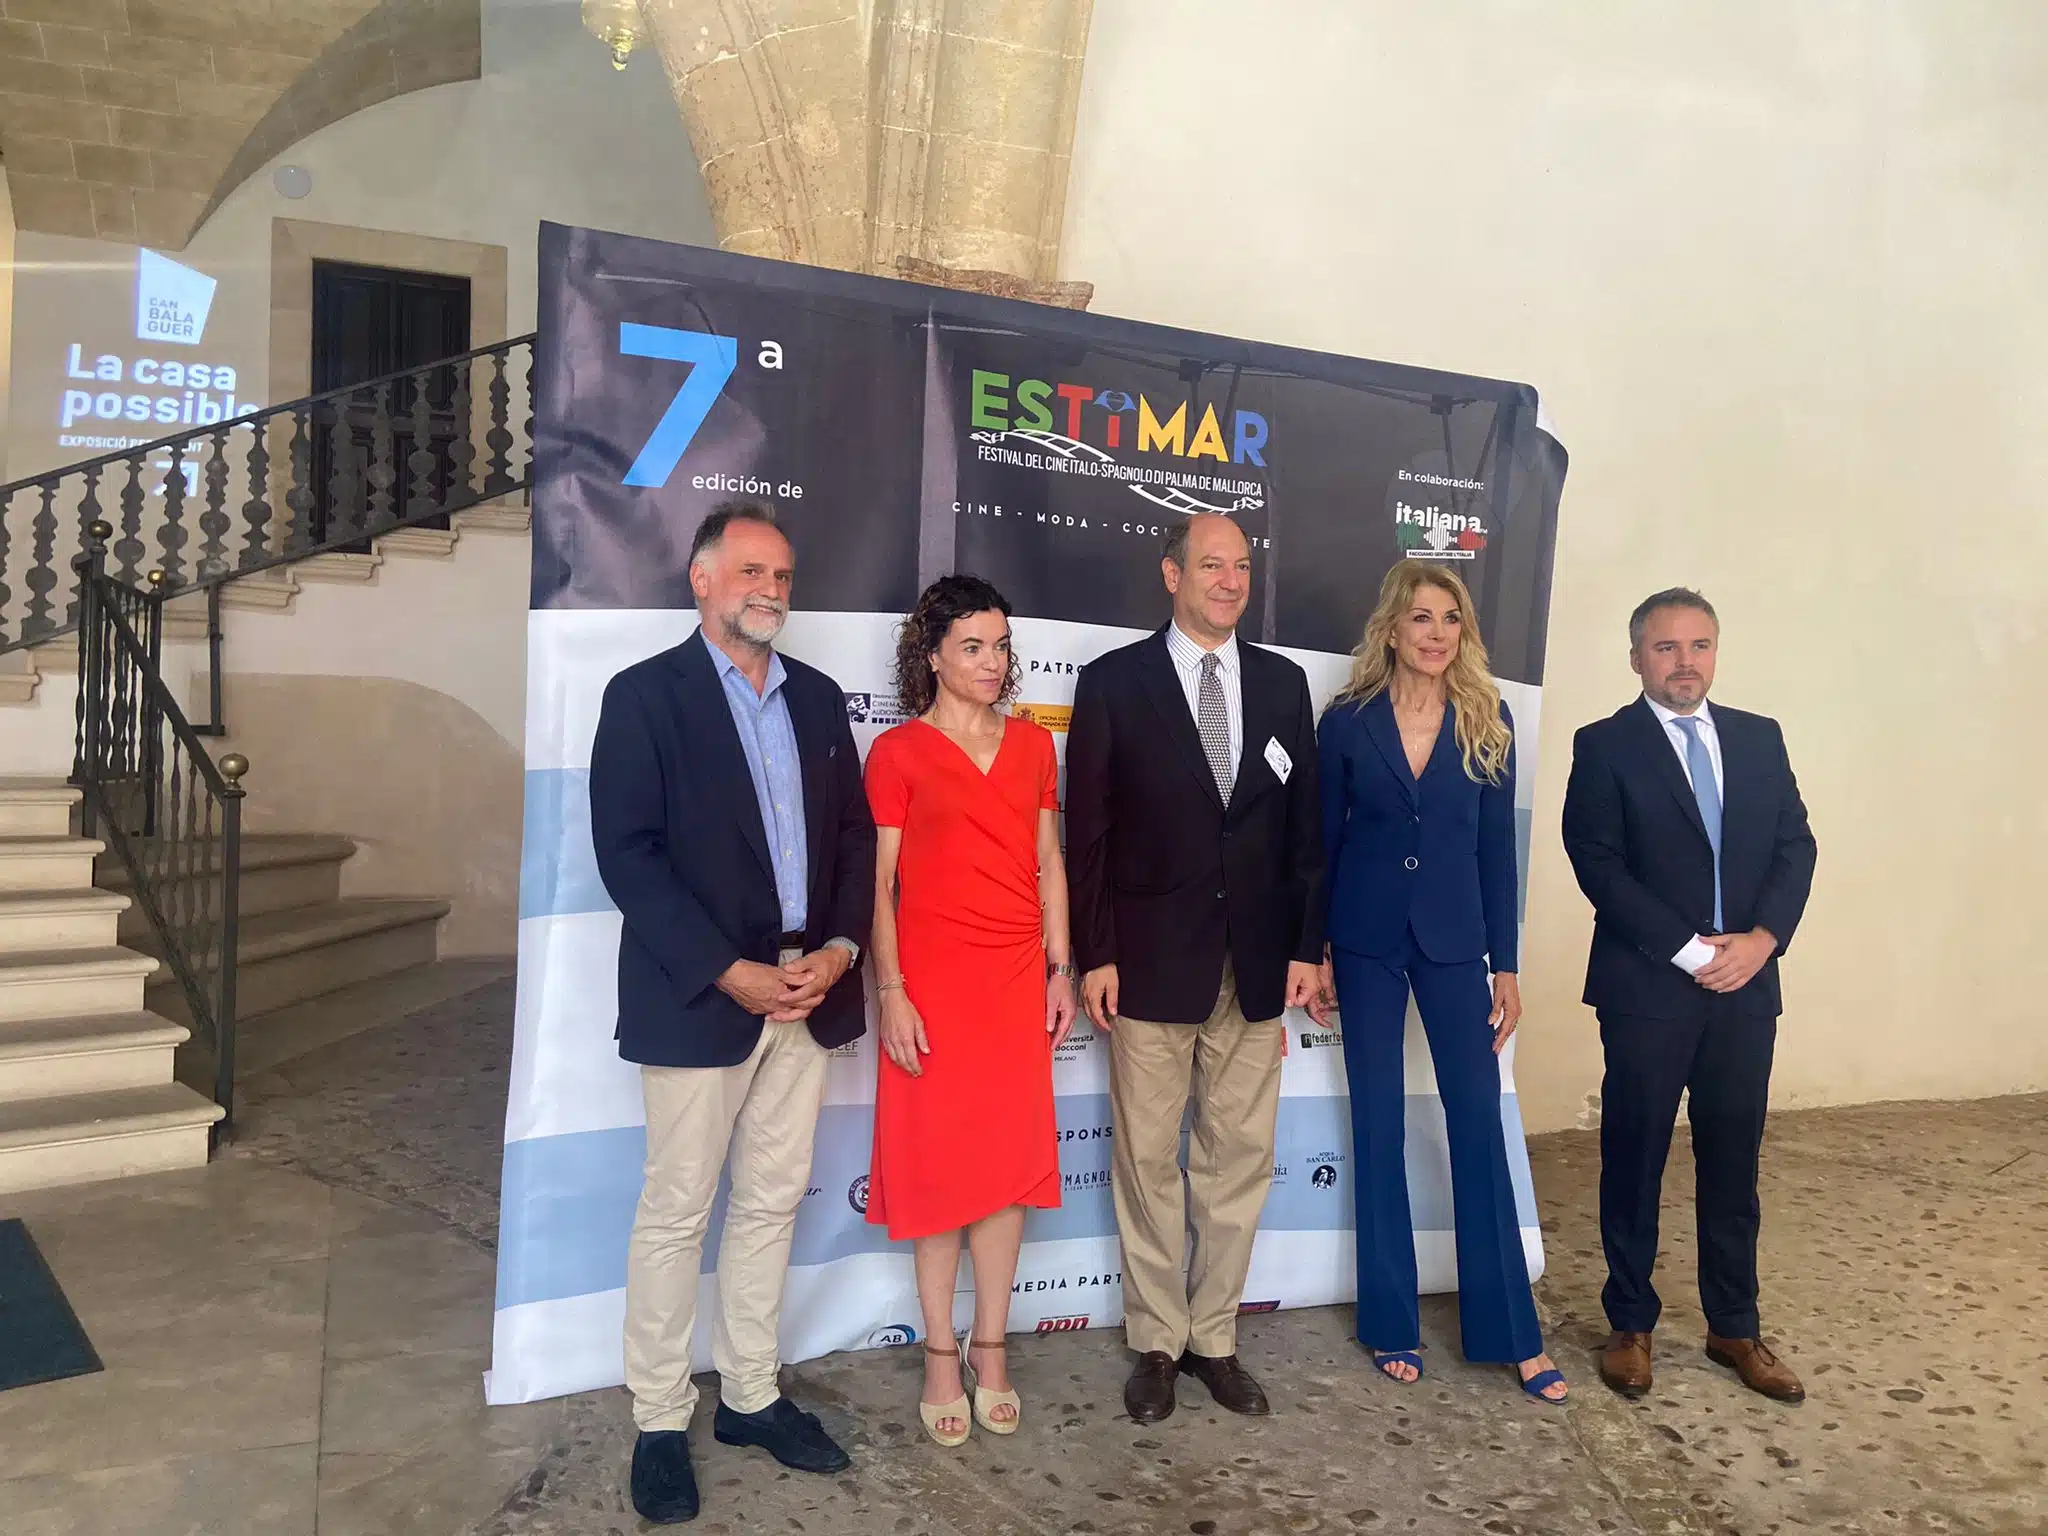 Estimar, a Palma De Mallorca il Festival internazionale del cinema italo-spagnolo 